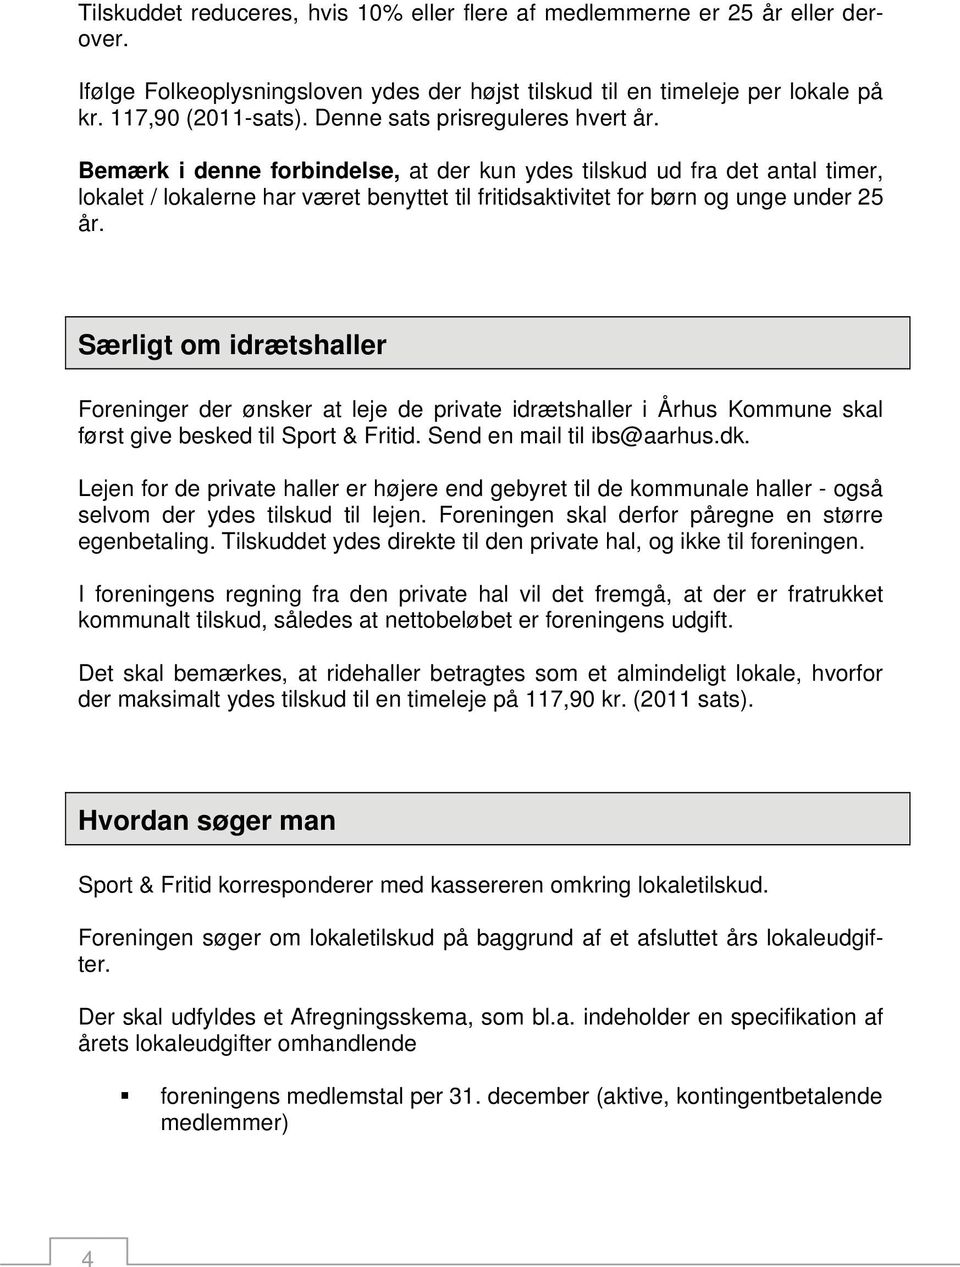 Særligt om idrætshaller Foreninger der ønsker at leje de private idrætshaller i Århus Kommune skal først give besked til Sport & Fritid. Send en mail til ibs@aarhus.dk.